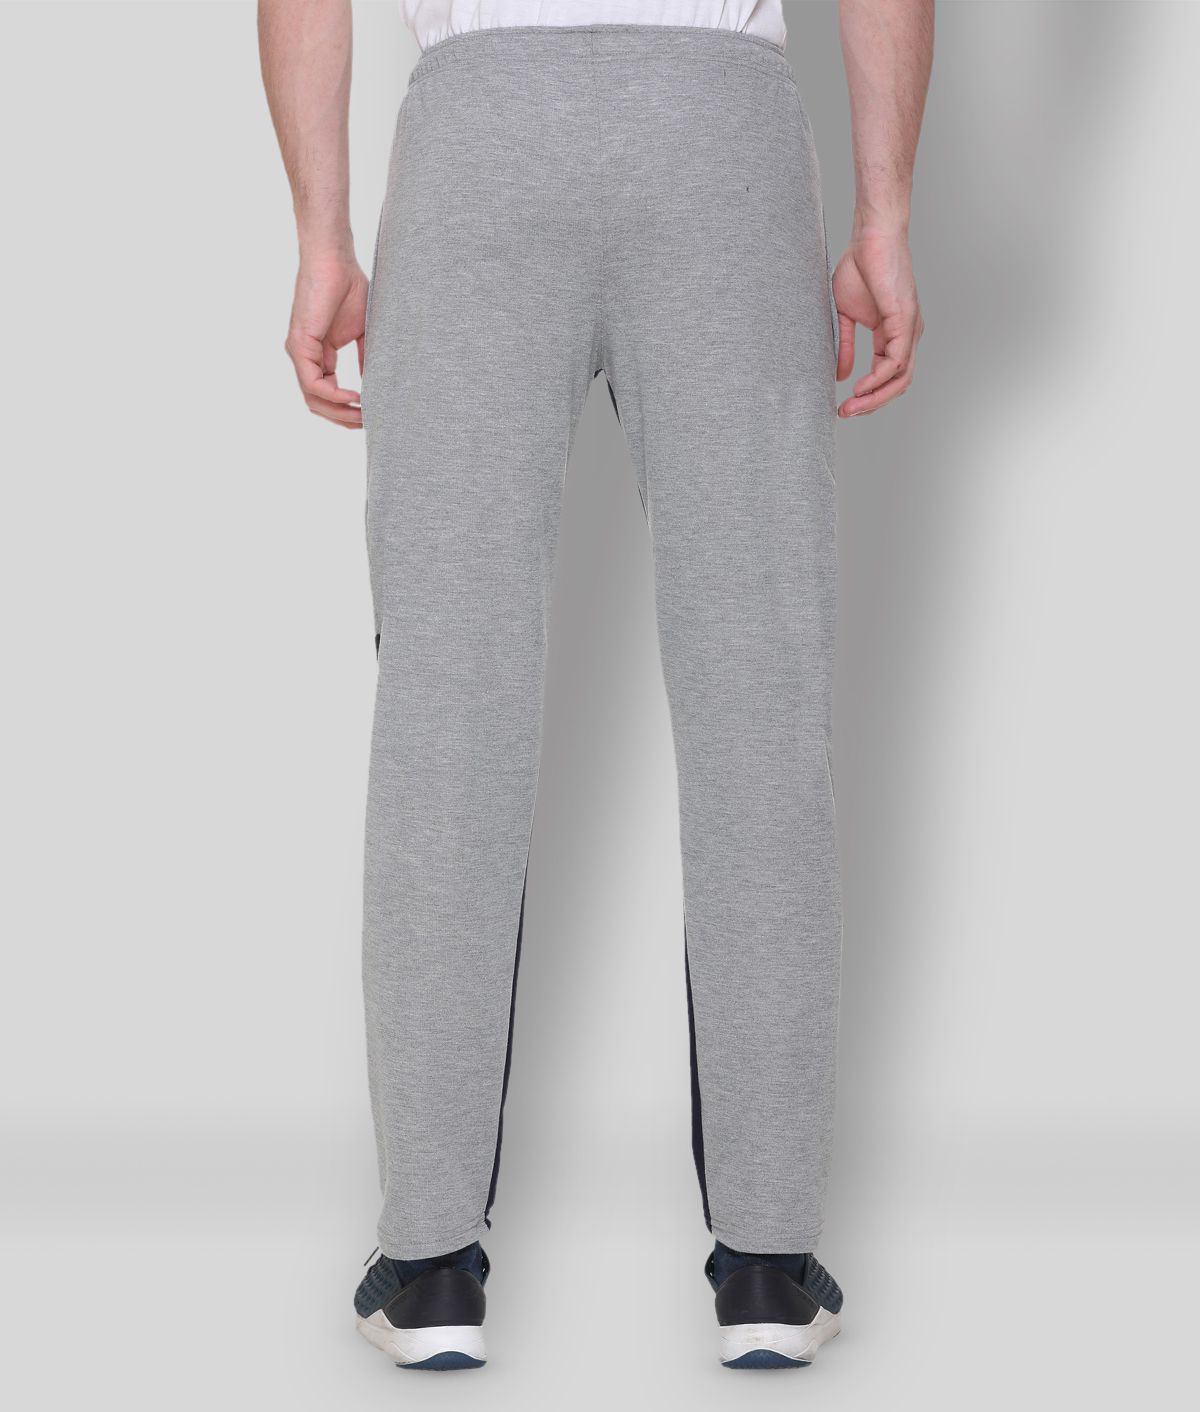 Buy HVBK - Grey Cotton Blend Men's Trackpants ( Pack of 1 ) Online at ...